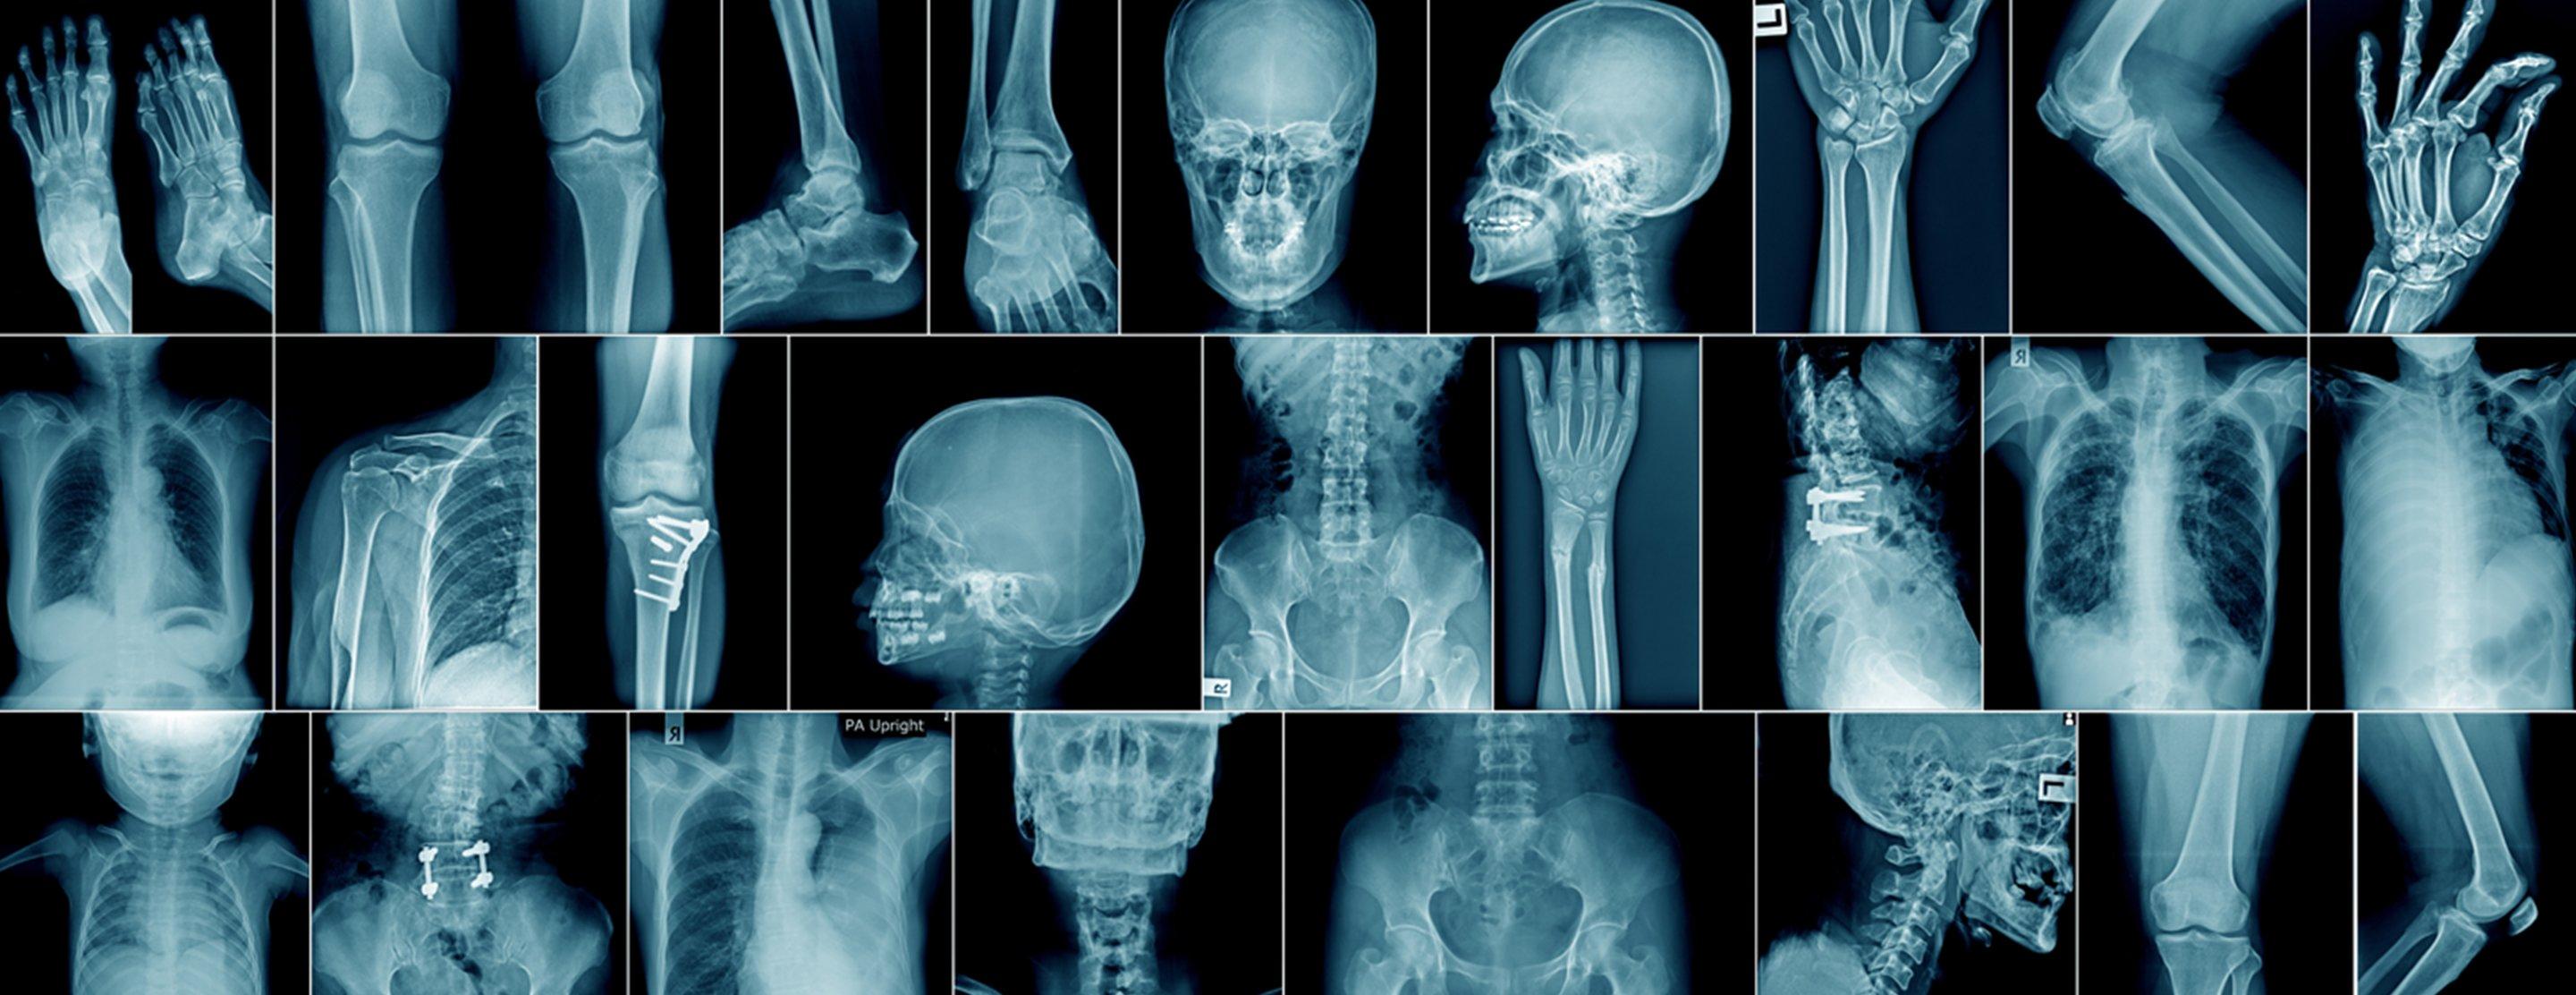 Bilim İnsanları Şokta: Yapay Zeka Kendi Kendine Röntgenlerden Irkları Tahmin Etmeye Başladı